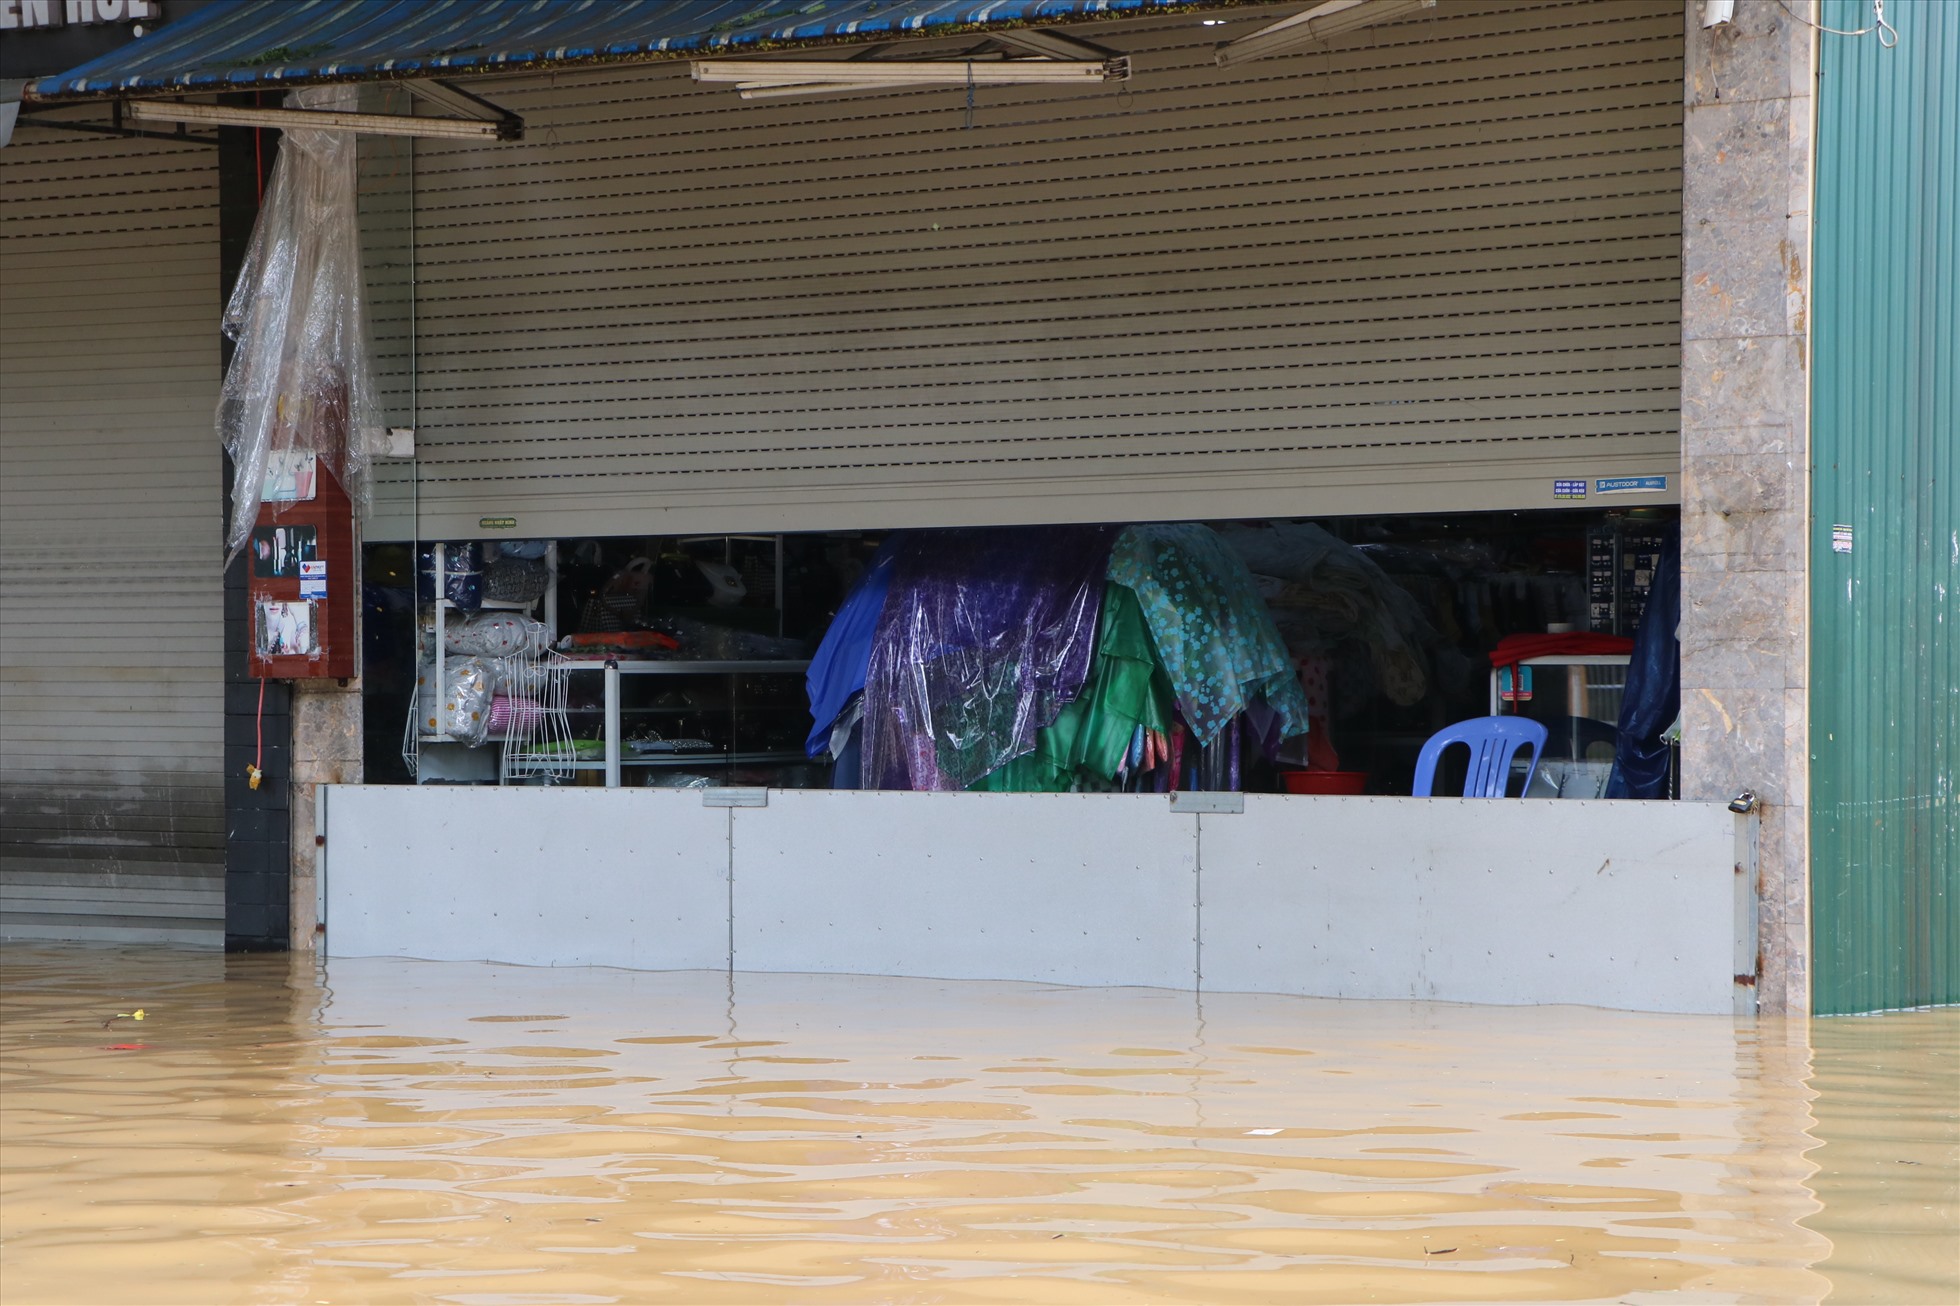 Nhiều hàng quán của người dân dùng các tấm chắn trước cửa để tránh các đợt sóng nước từ đường đánh vào nhà.